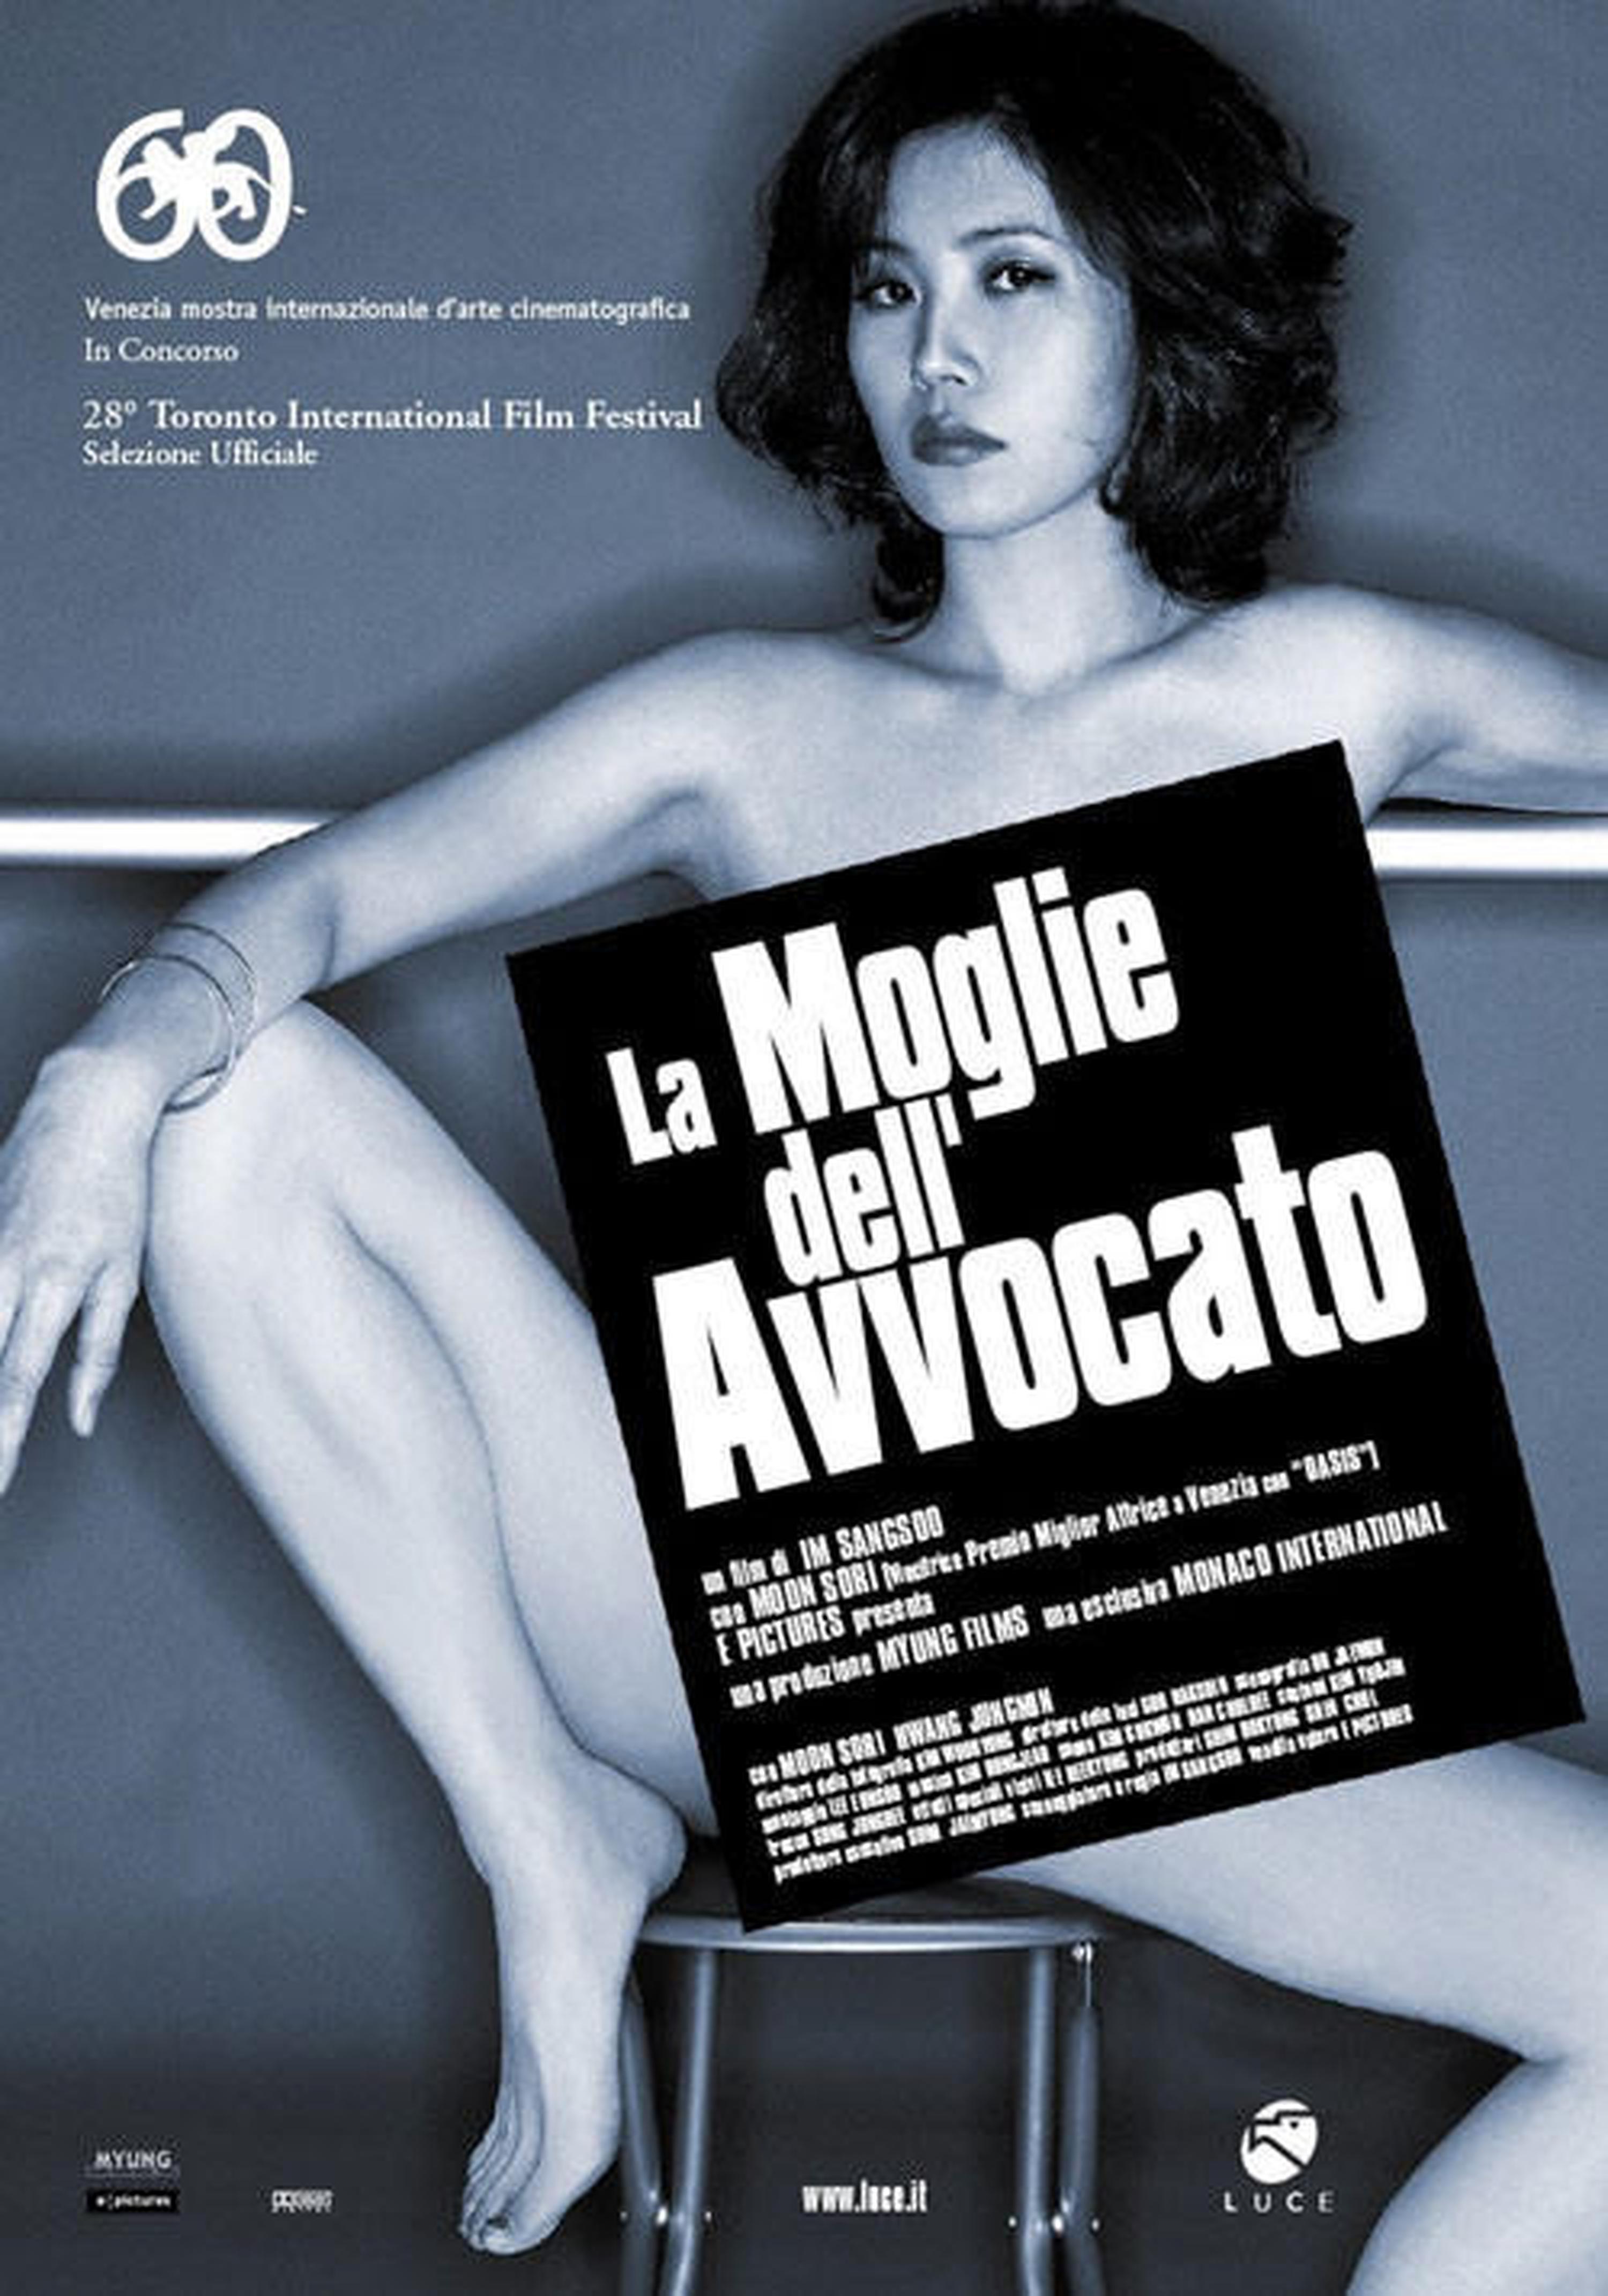 【2000-2010】《偷情家族》 (2003)导演林常树。入围第60届威尼斯电影节主竞赛单元。